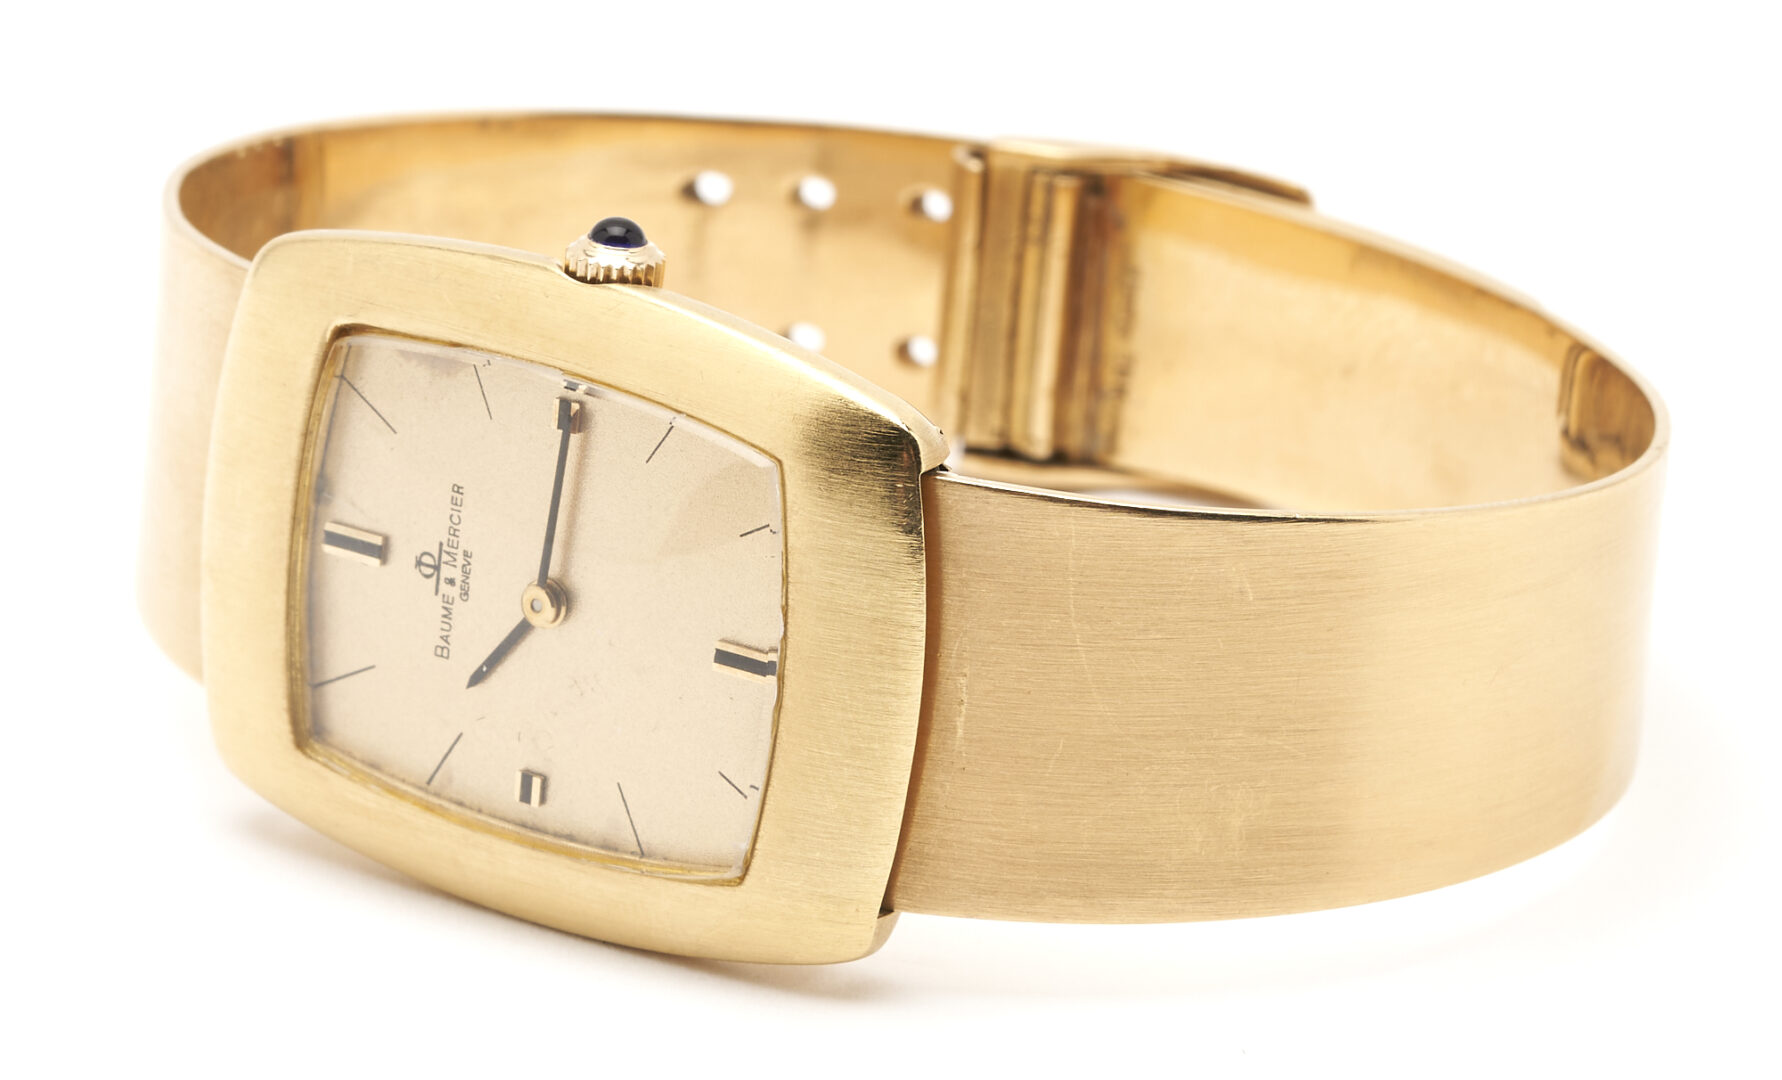 Lot 31: Gents' 18K Baume & Mercier Wristwatch